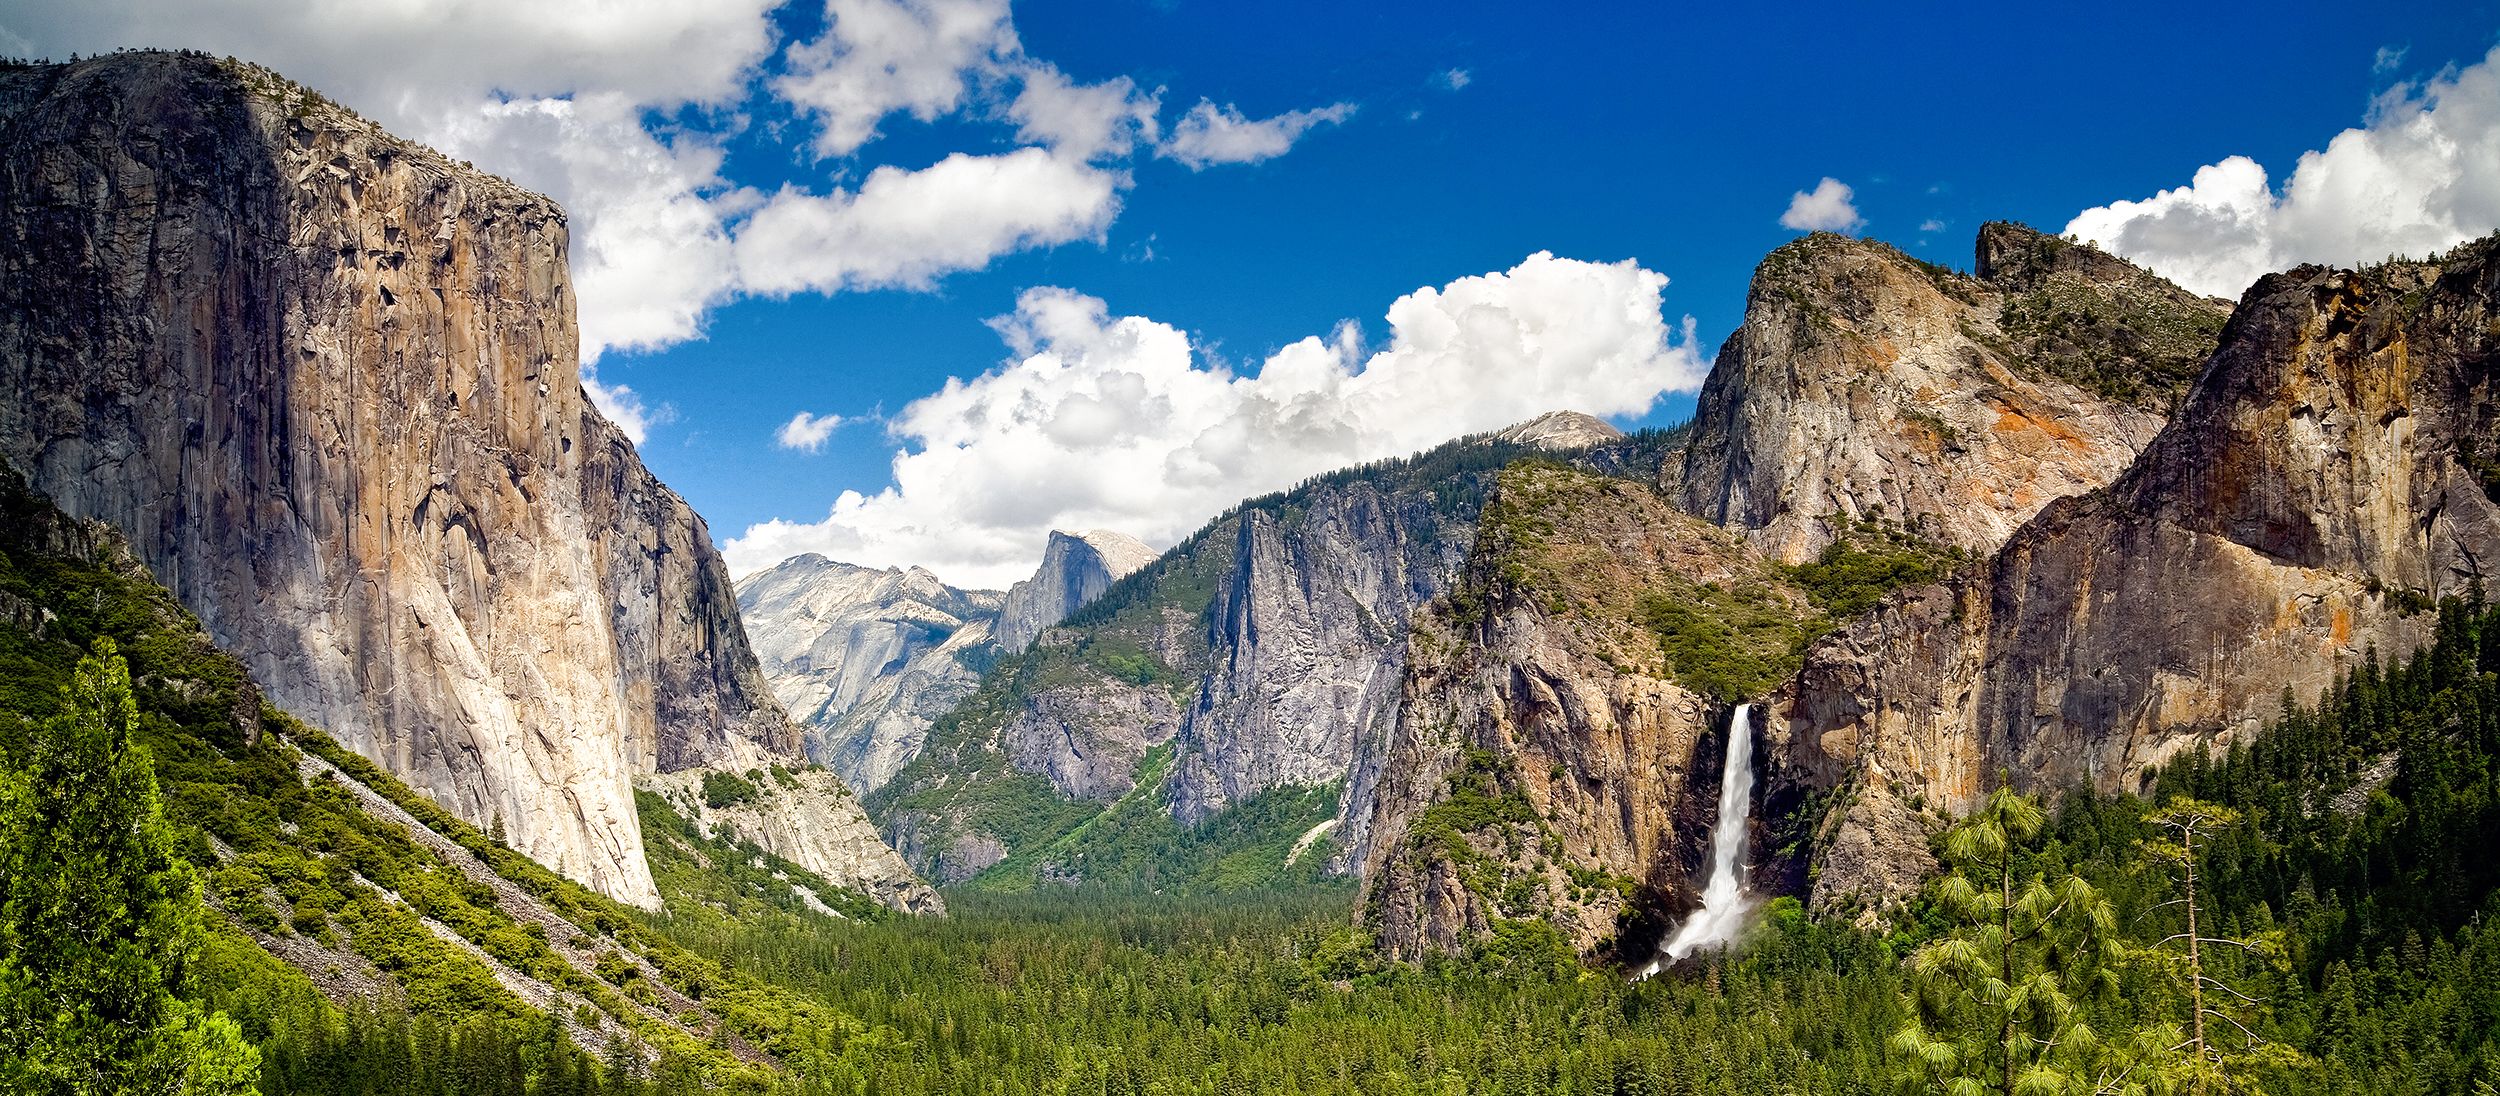 Landschaftseindruck aus dem Yosemite Nationalpark